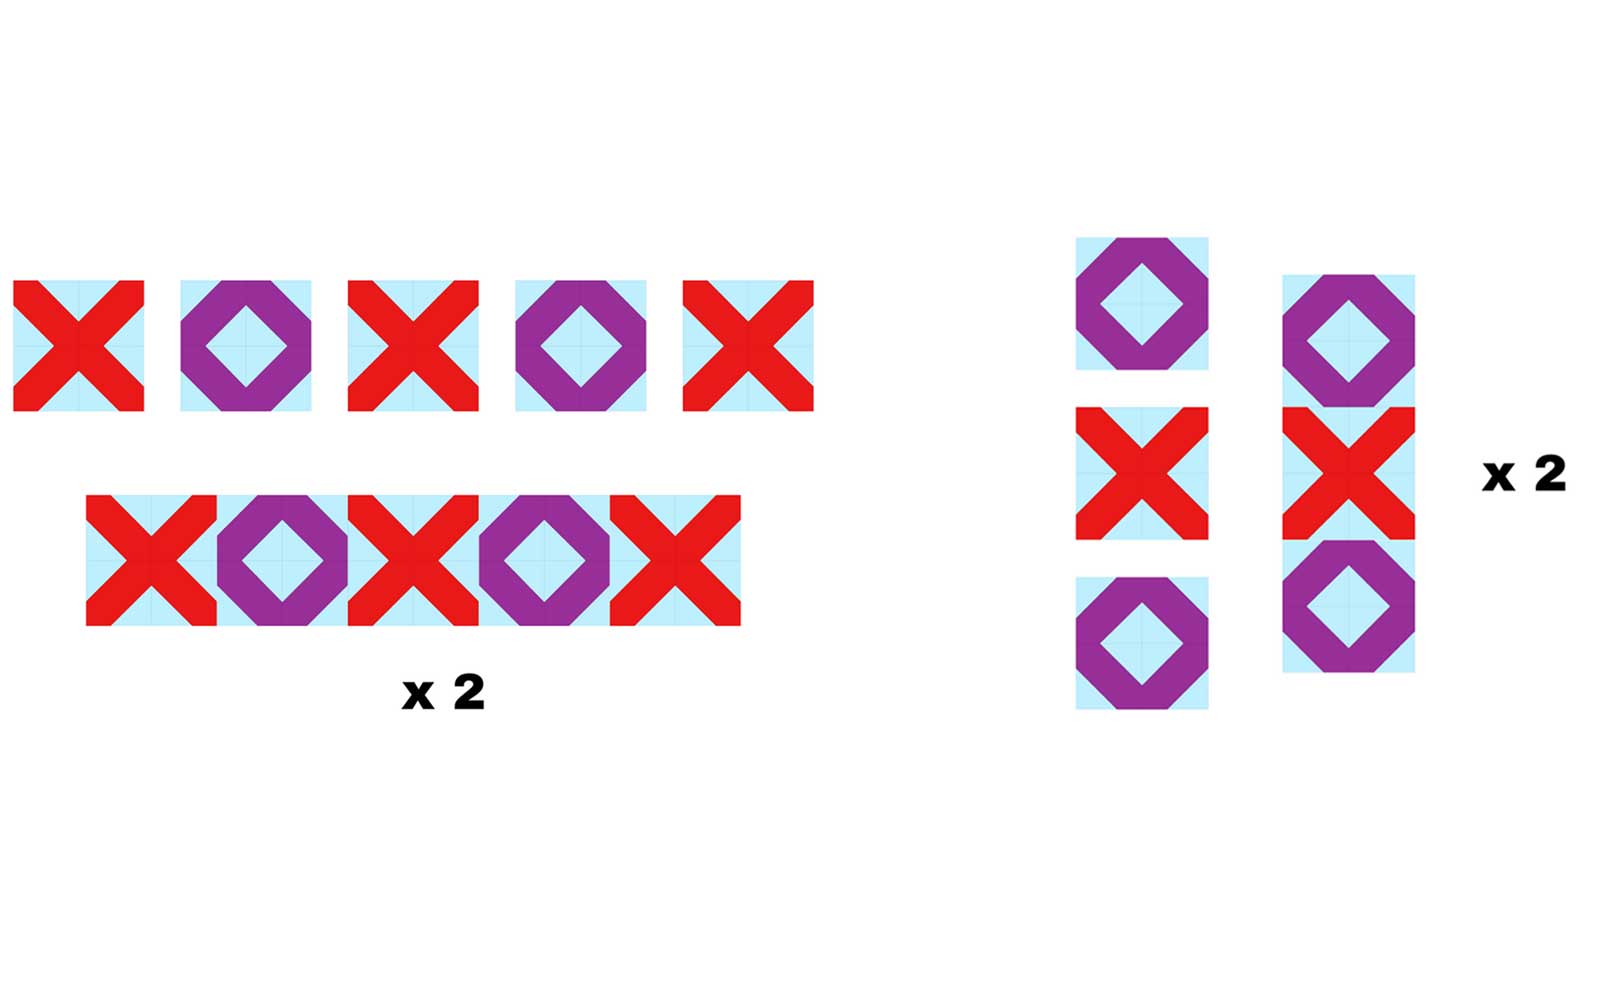 Diagramm für das Zusammensetzen von X- und O-Blöcken